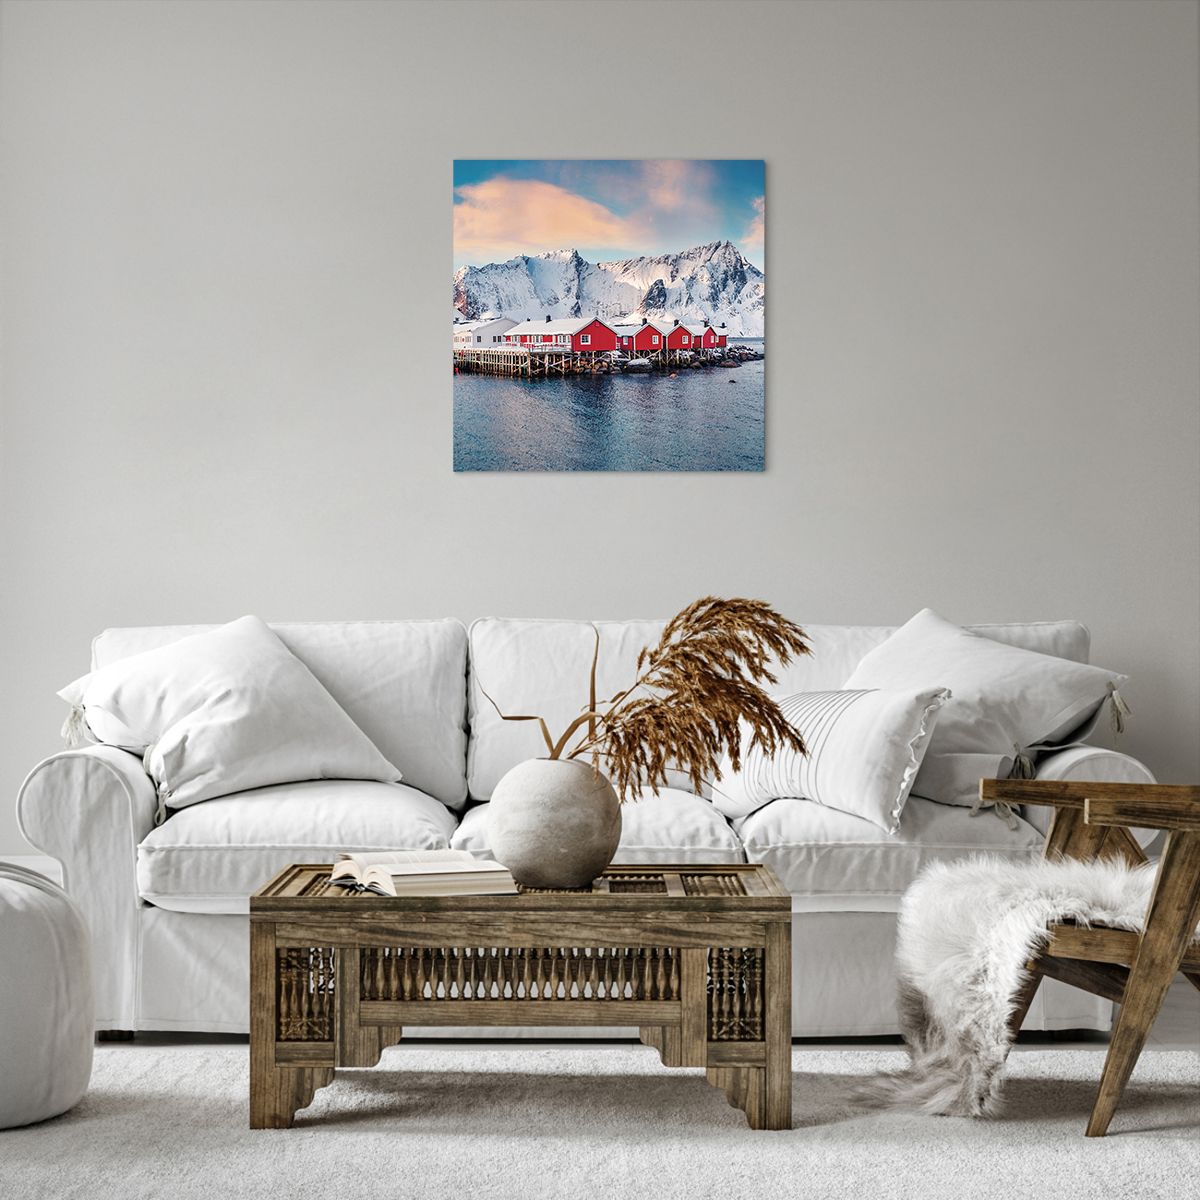 Bild auf Leinwand Landschaft, Bild auf Leinwand Norwegen, Bild auf Leinwand Lofoten, Bild auf Leinwand Boote, Bild auf Leinwand Norwegen